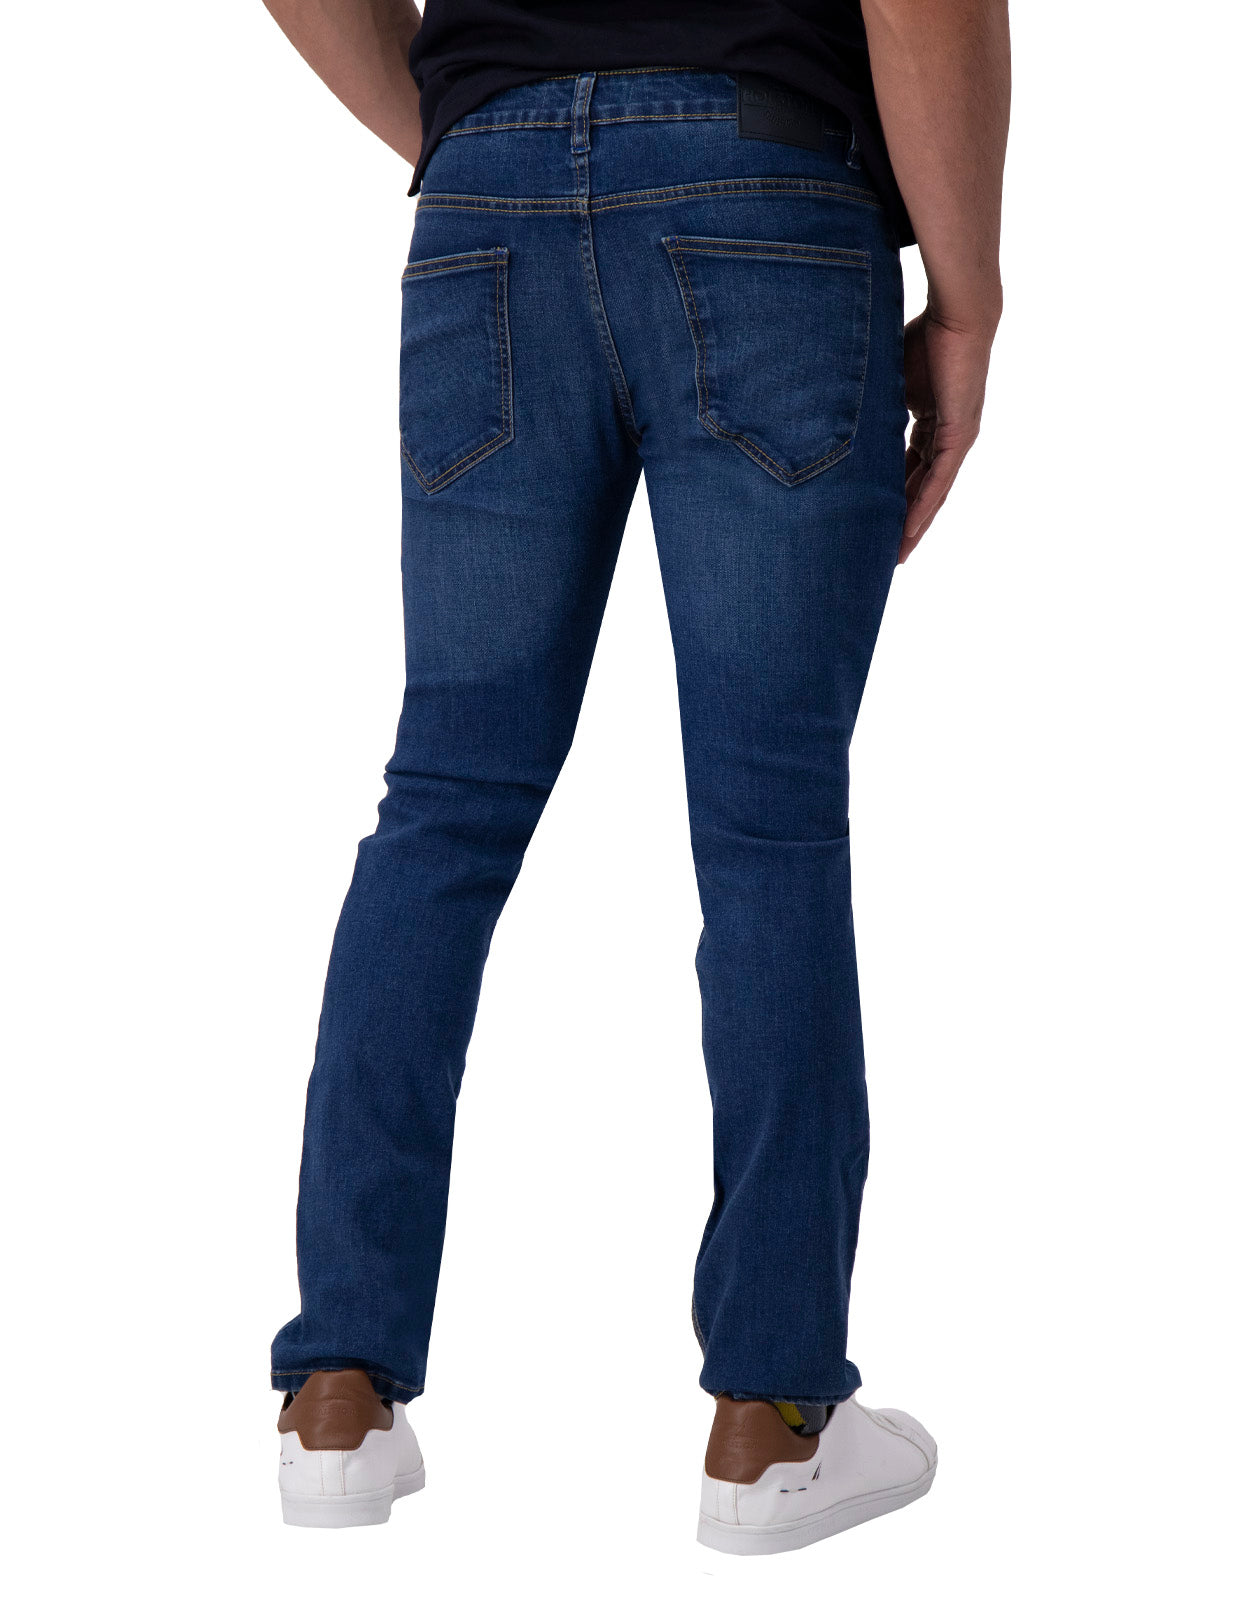 Jeans de Mezclilla Slim Fit - Denver